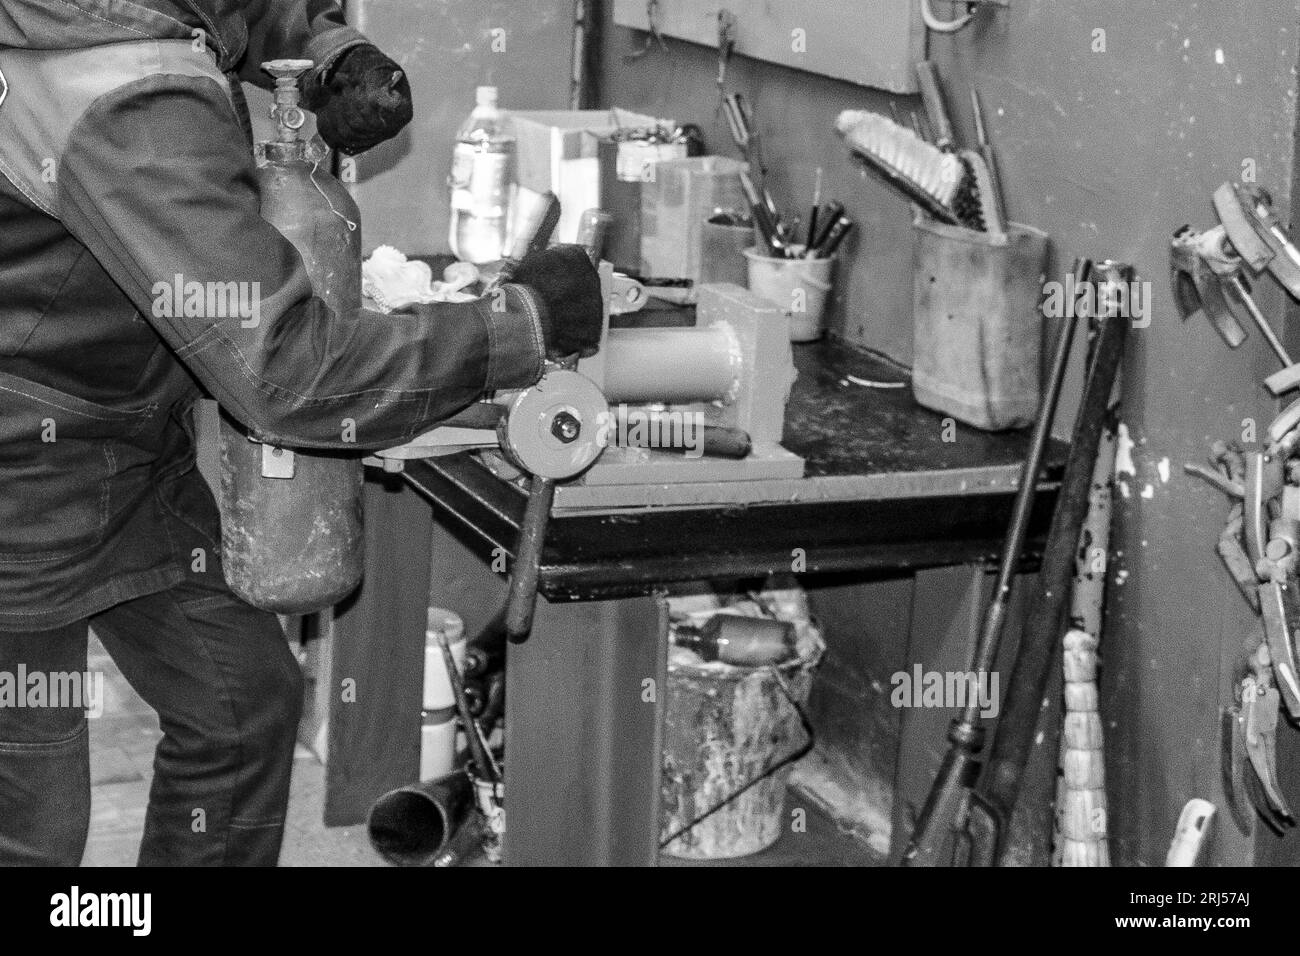 Un ouvrier travaillant dans un grand étau industriel en métal répare un cylindre d'extincteur rouge dans un atelier de l'usine. Banque D'Images